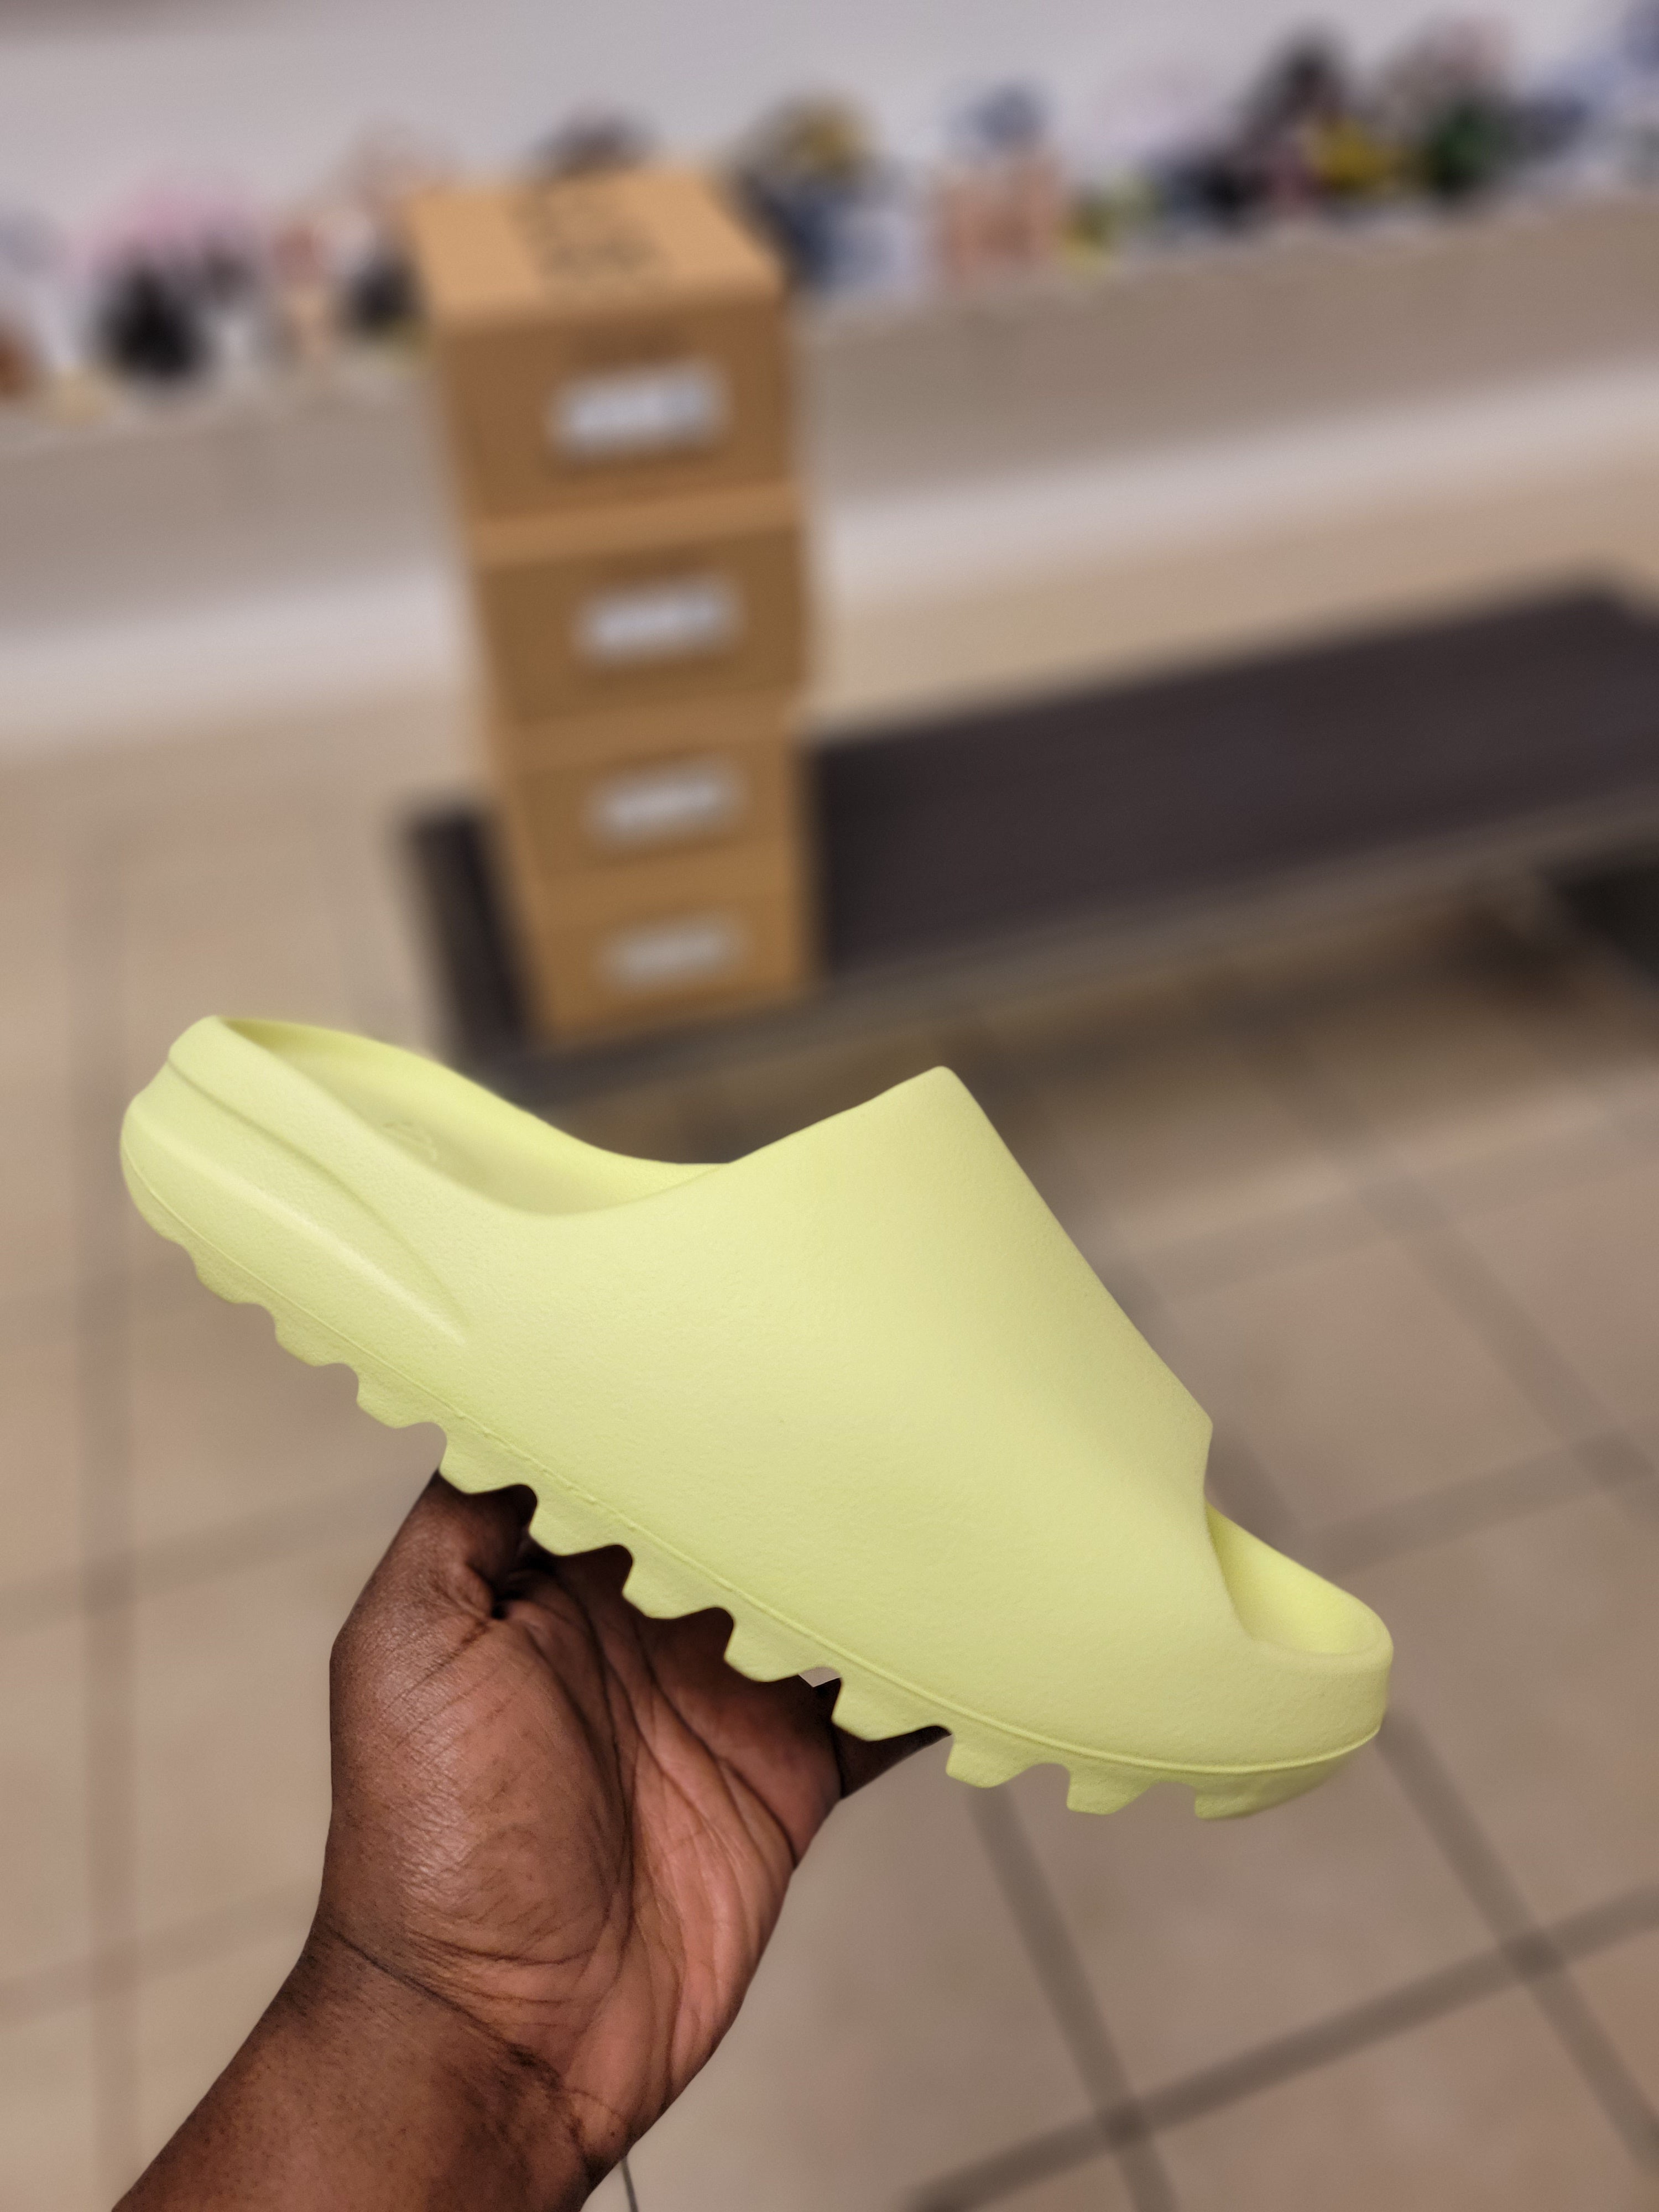 Adidas Yeezy slide green glow multiple size shoe